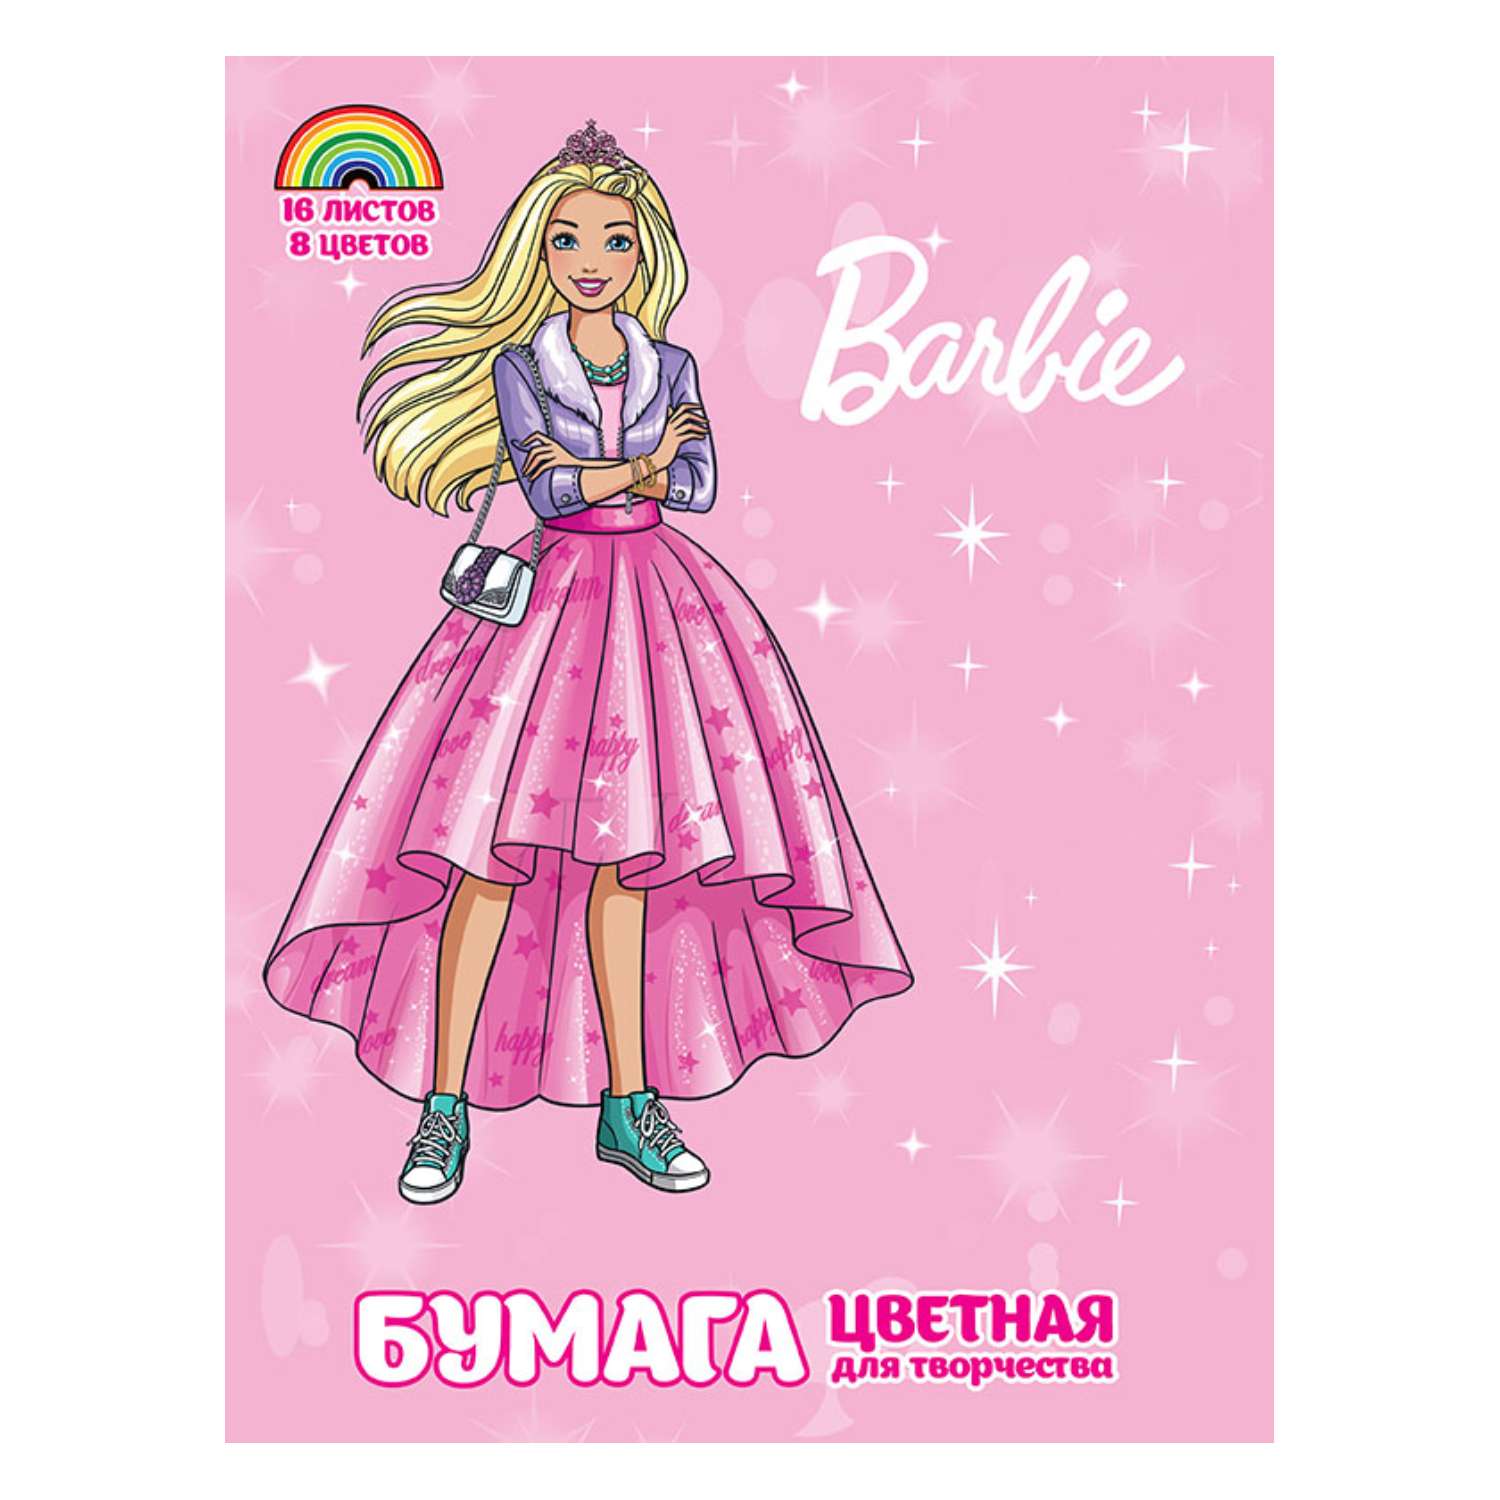 Бумага цветная PrioritY Barbie 16 Листов 8 Цветов - фото 1